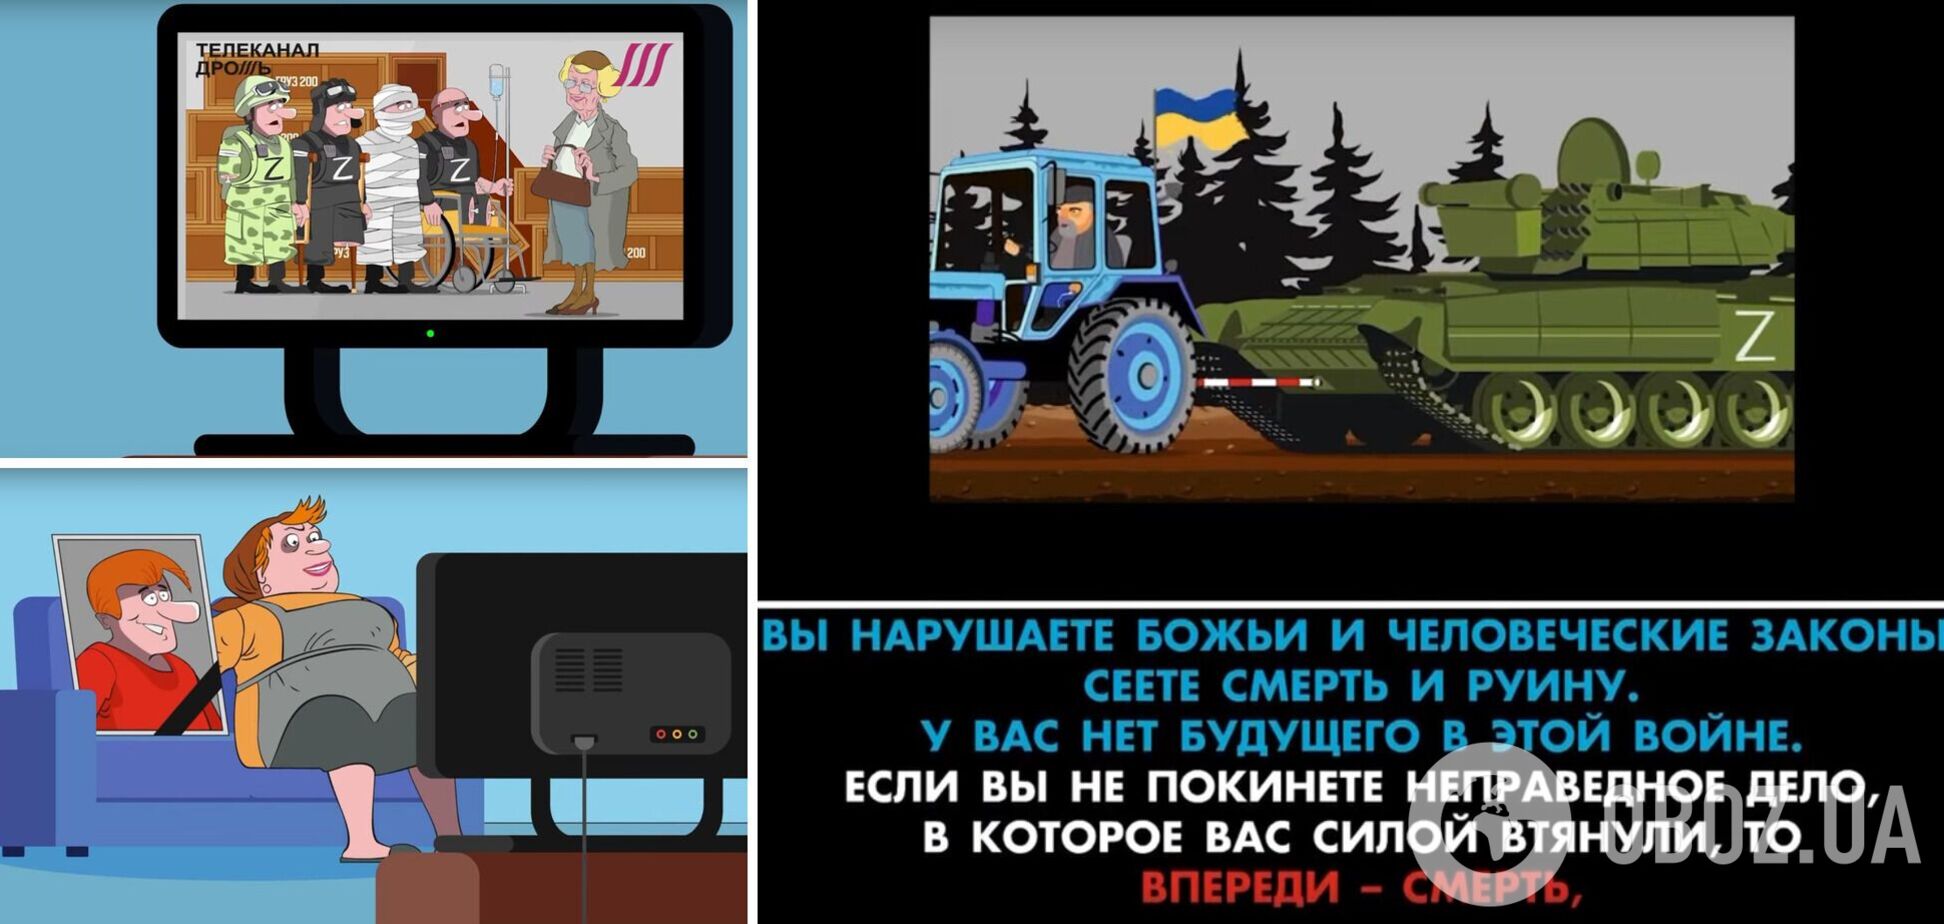 'Впереди - смерть': россиянам показали в мультфильме, что их ждет на войне в Украине